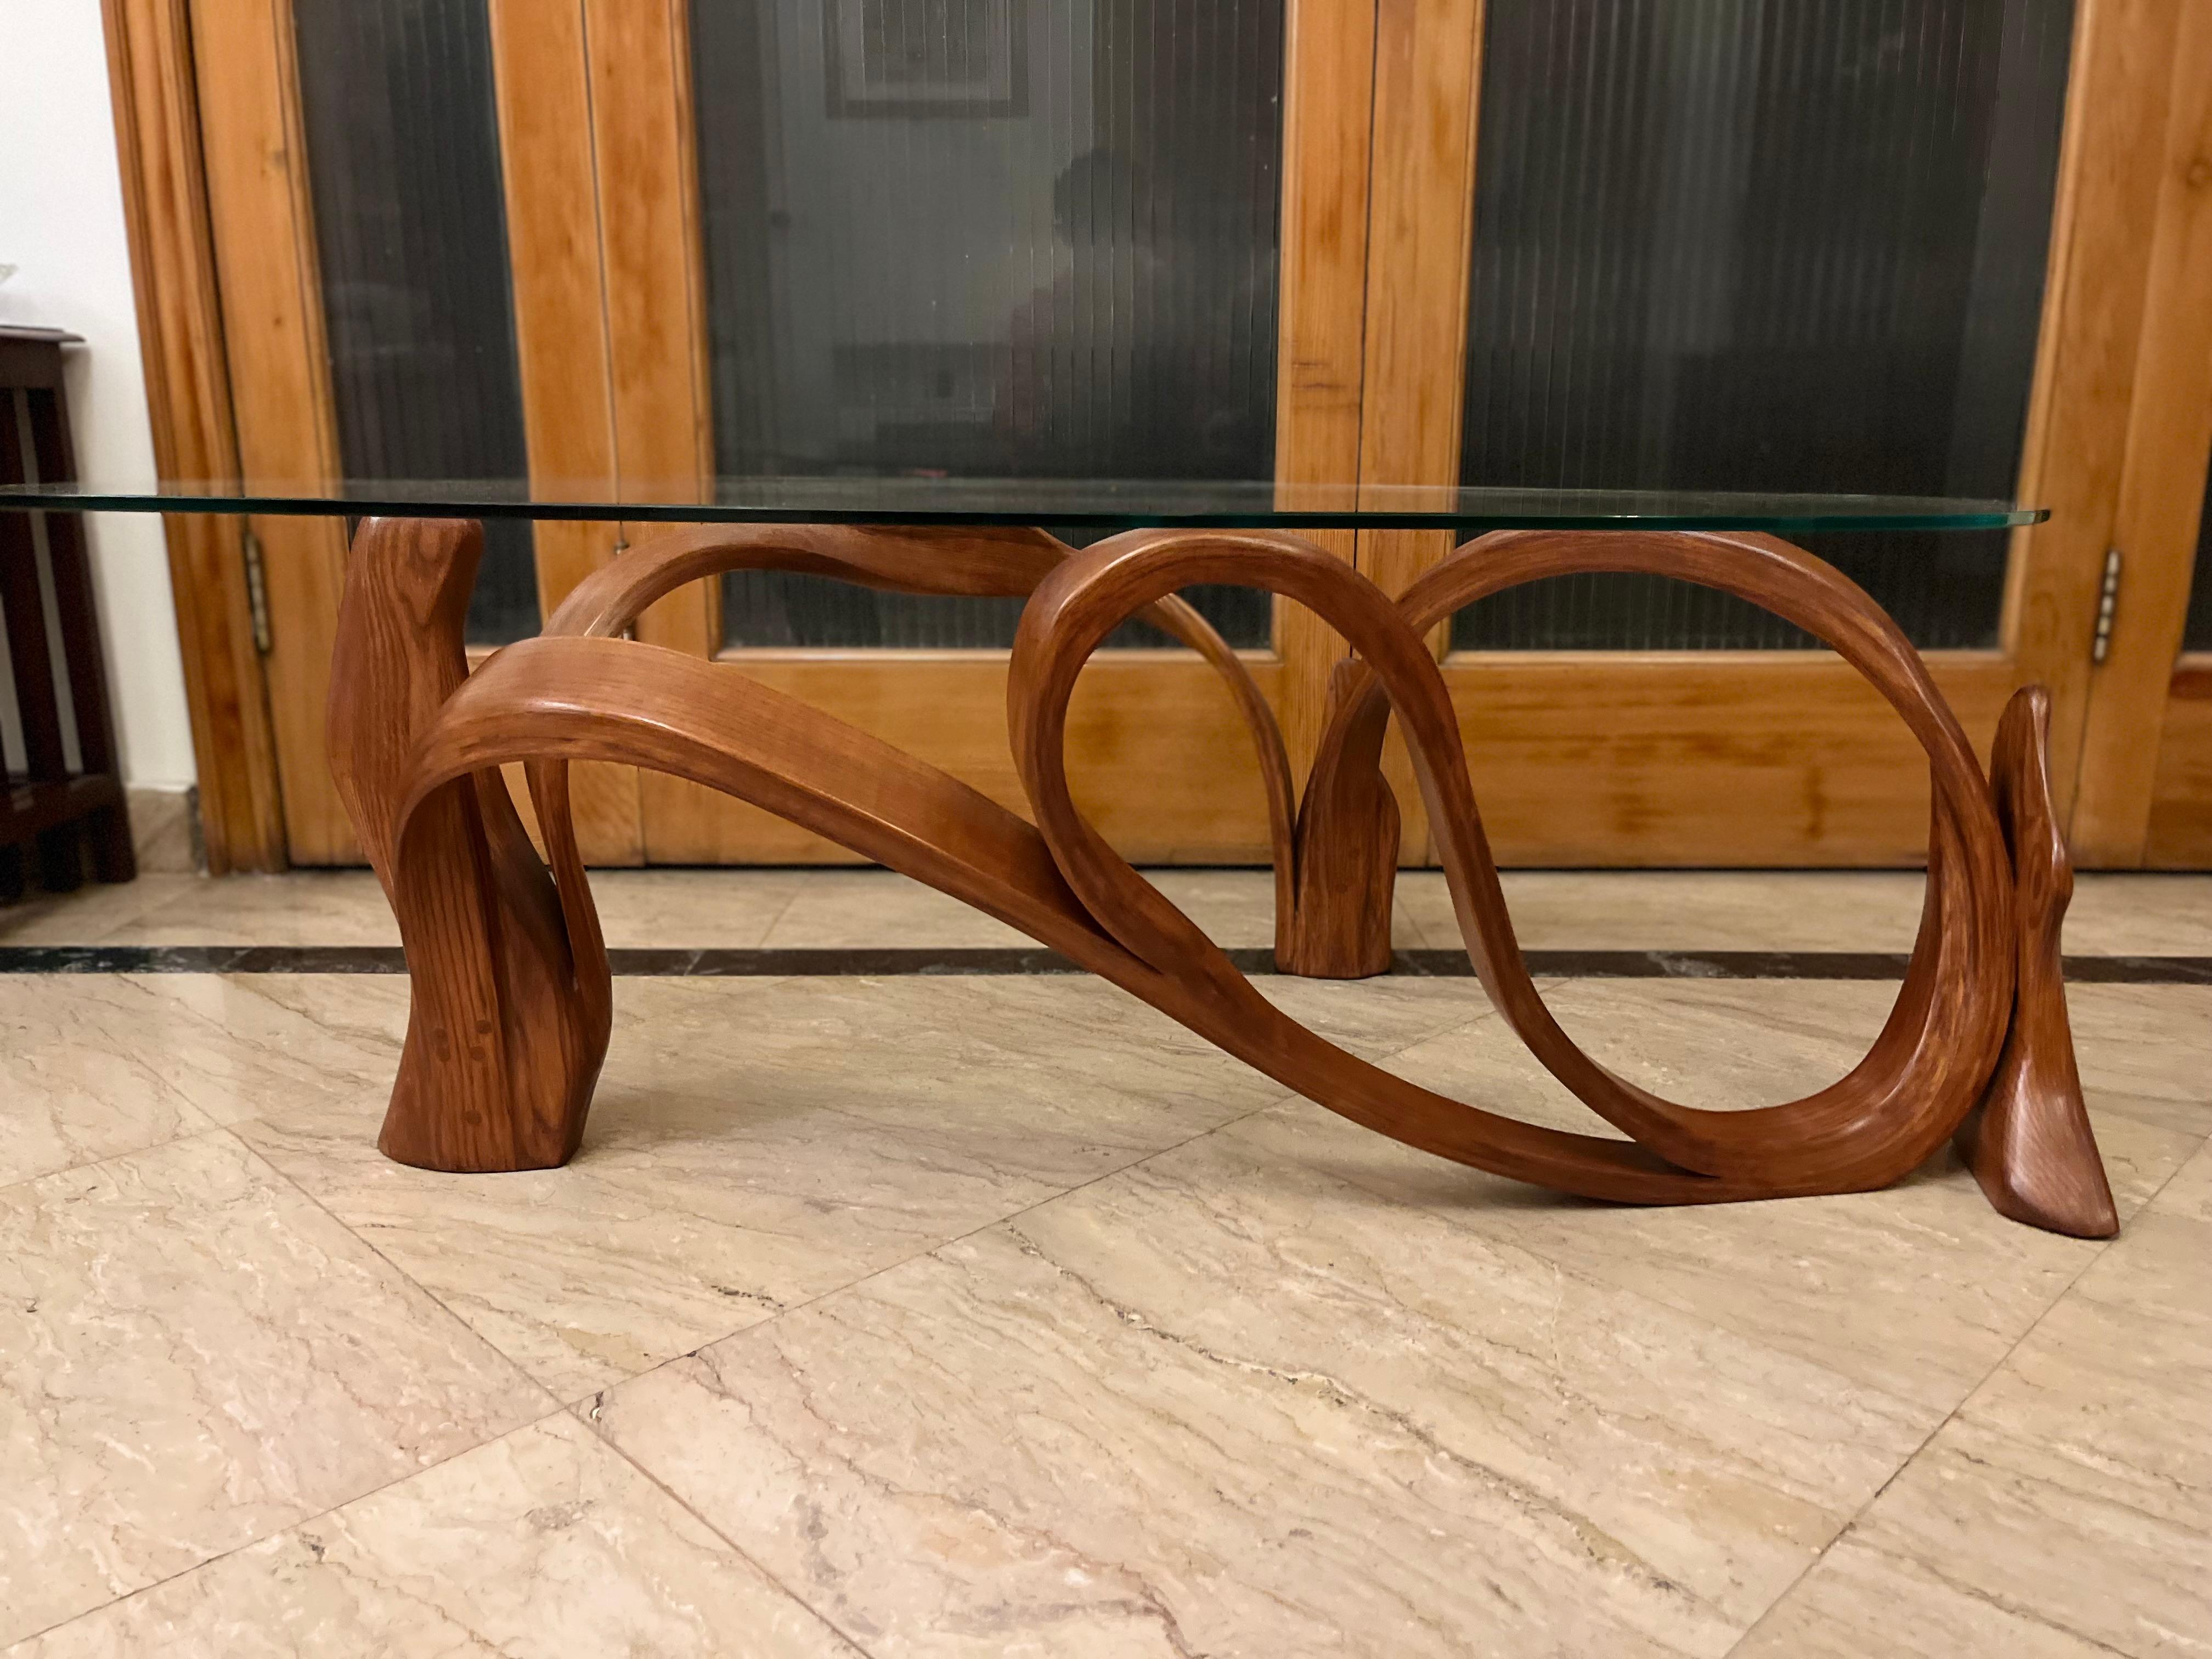 La table centrale Collis est conçue selon l'ancienne technique japonaise de cintrage du bois. Chez Raka Studio, nous créons des designs à l'aide de cette technique qui sont fluides dans leur forme et cohérents avec les lois de la nature. Le design